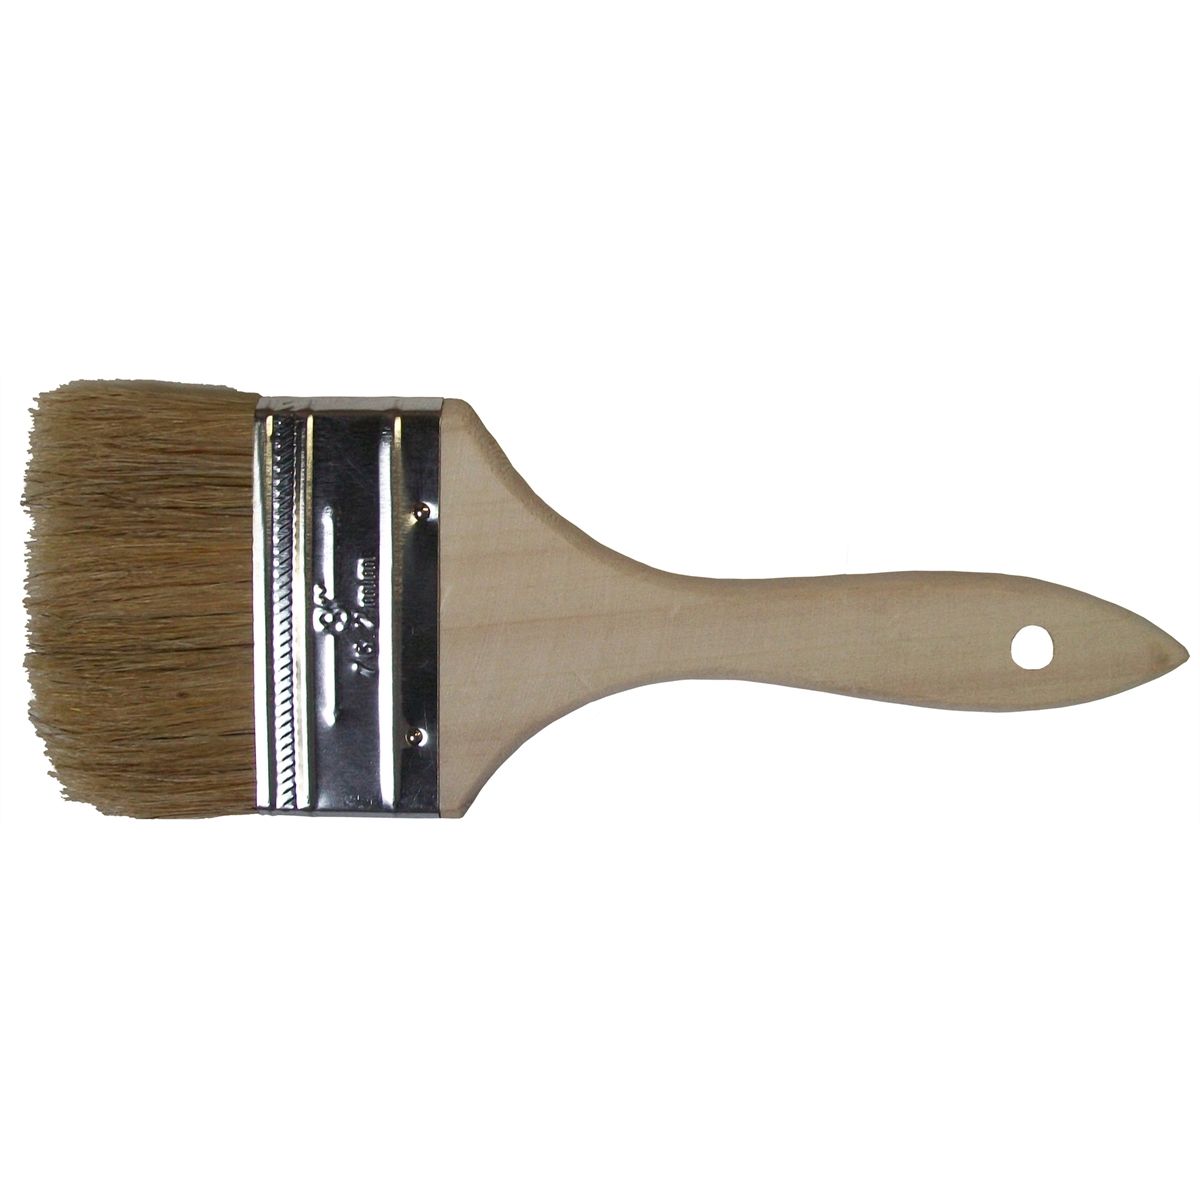 SEWACC Paint Brushes Bulk 50 Pcs Paint Brush Wool Brush Bulk Chips